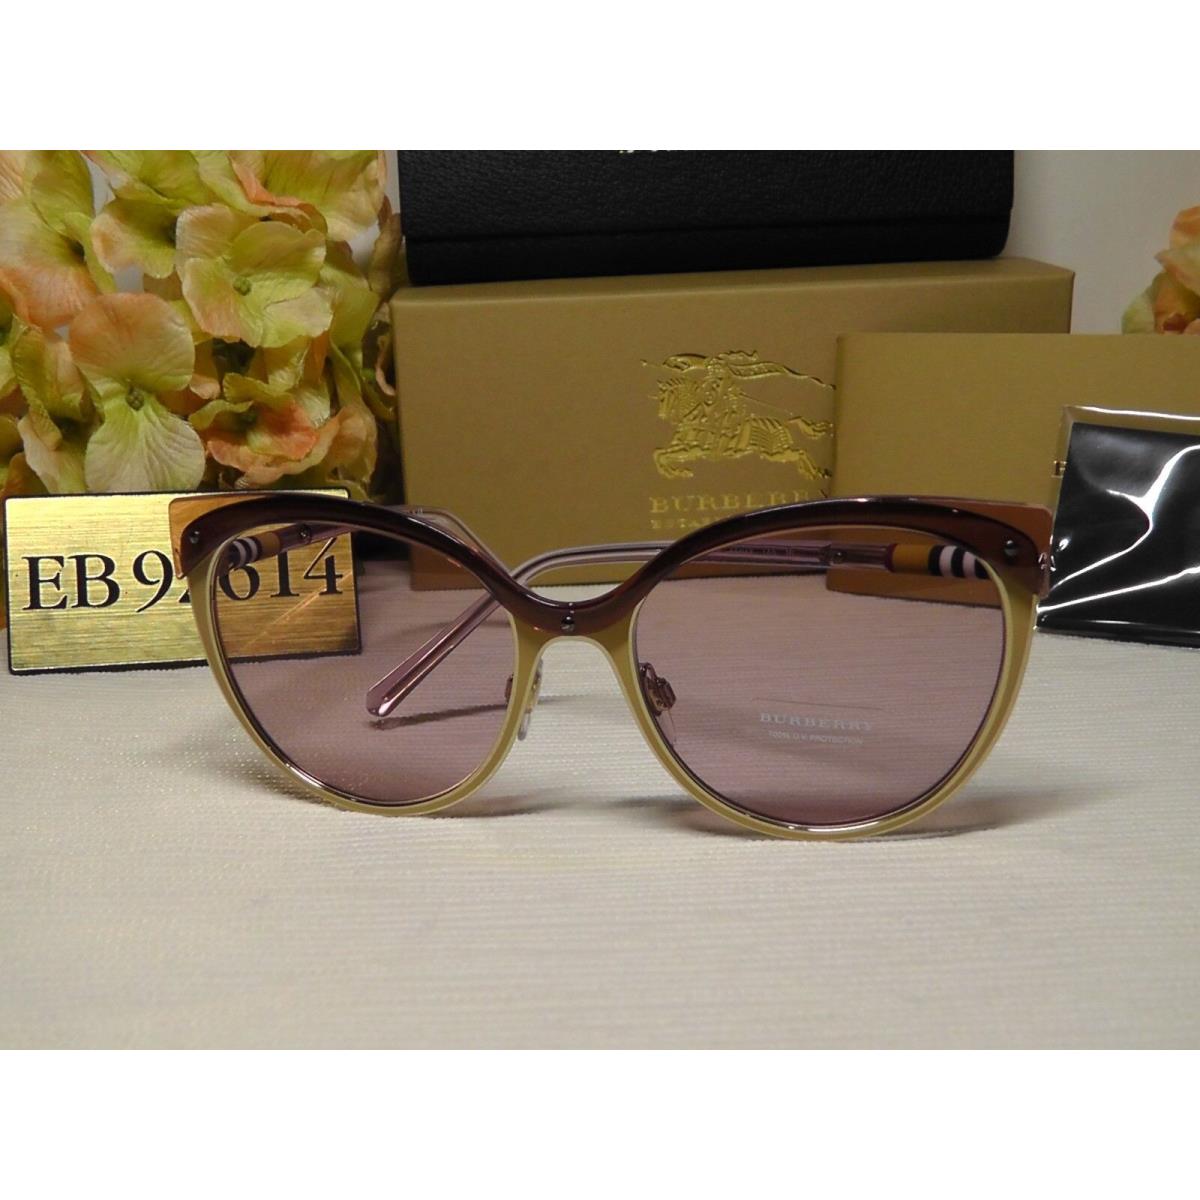 Burberry sunglasses  - Beige/Brushed/ Gold-tone Frame, Light Pink Lens 10